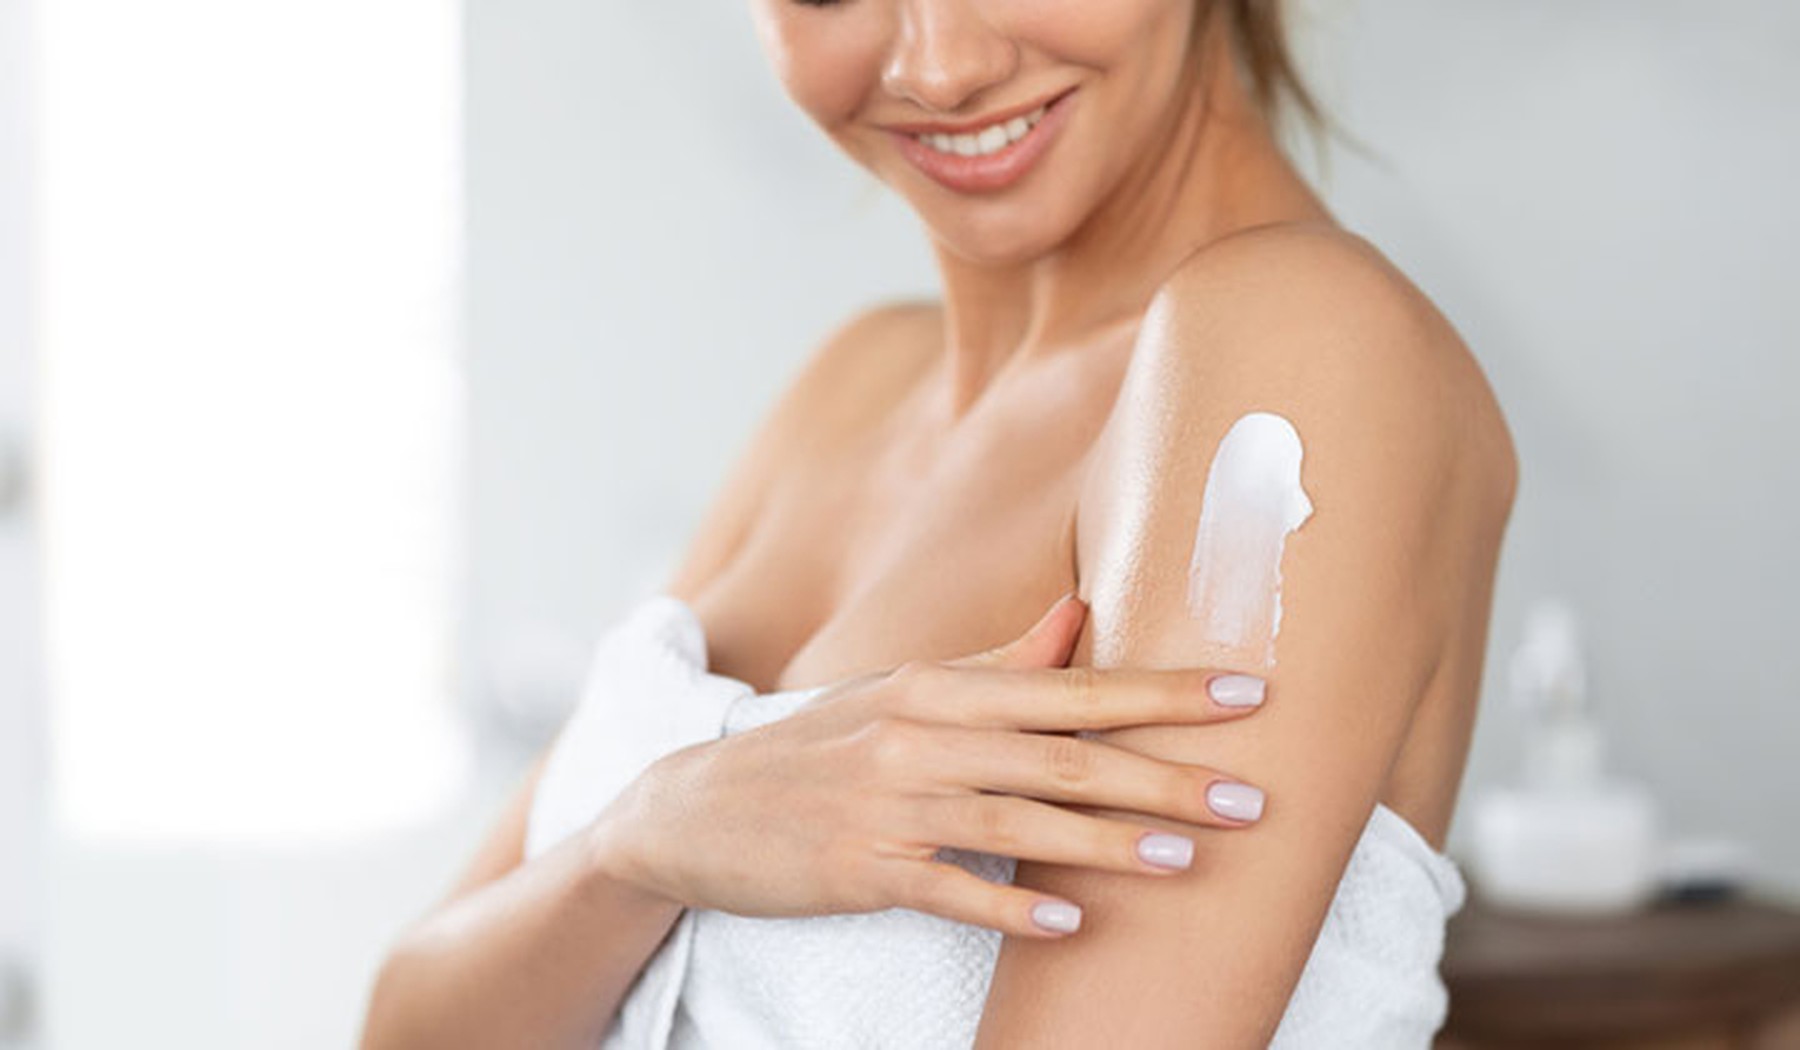 Mujer joven echándose crema aftersun en el brazo después de salir de la ducha envuelta en una toalla blanca